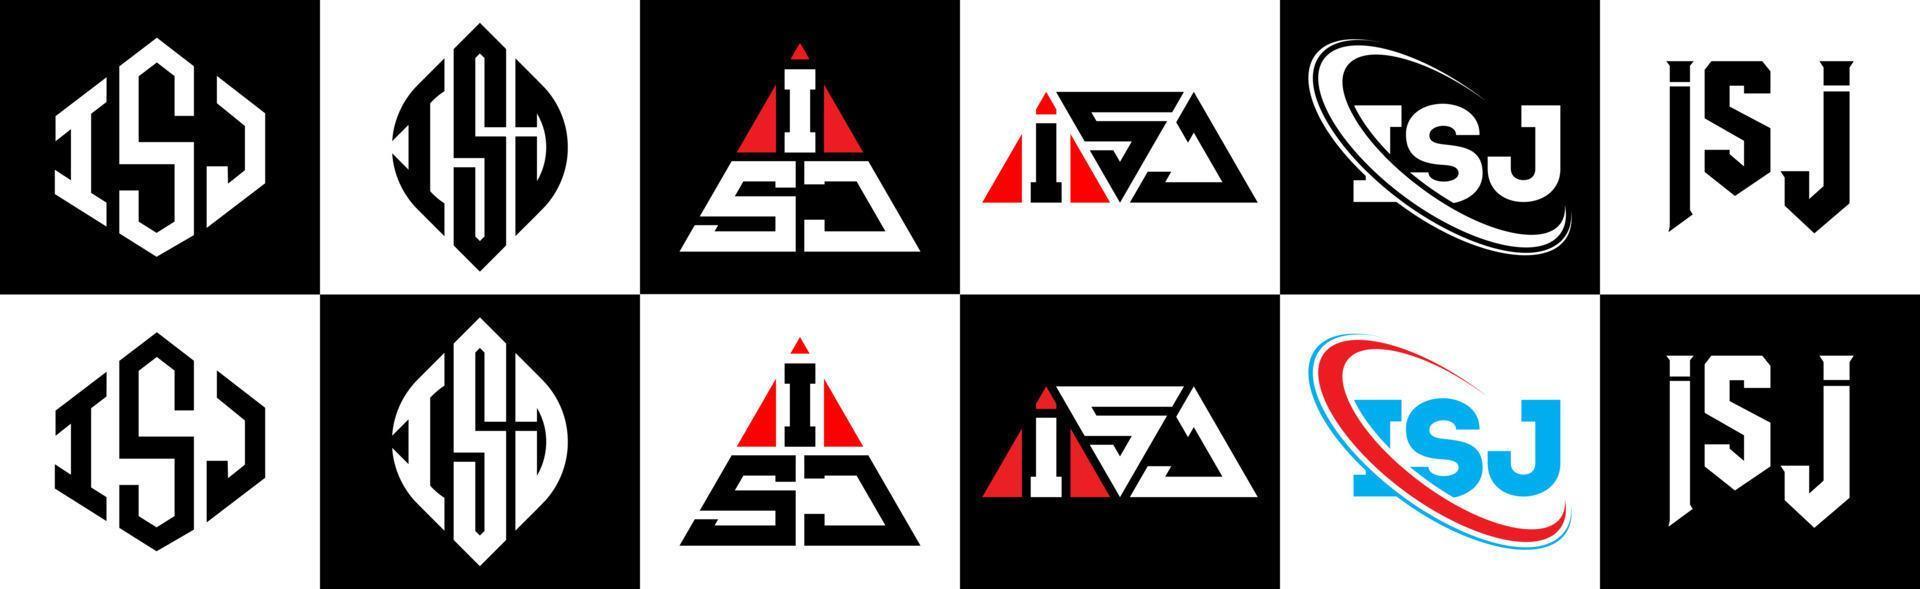 Diseño de logotipo de letra isj en seis estilos. isj polígono, círculo, triángulo, hexágono, estilo plano y simple con logotipo de letra de variación de color blanco y negro en una mesa de trabajo. logotipo minimalista y clásico de isj vector